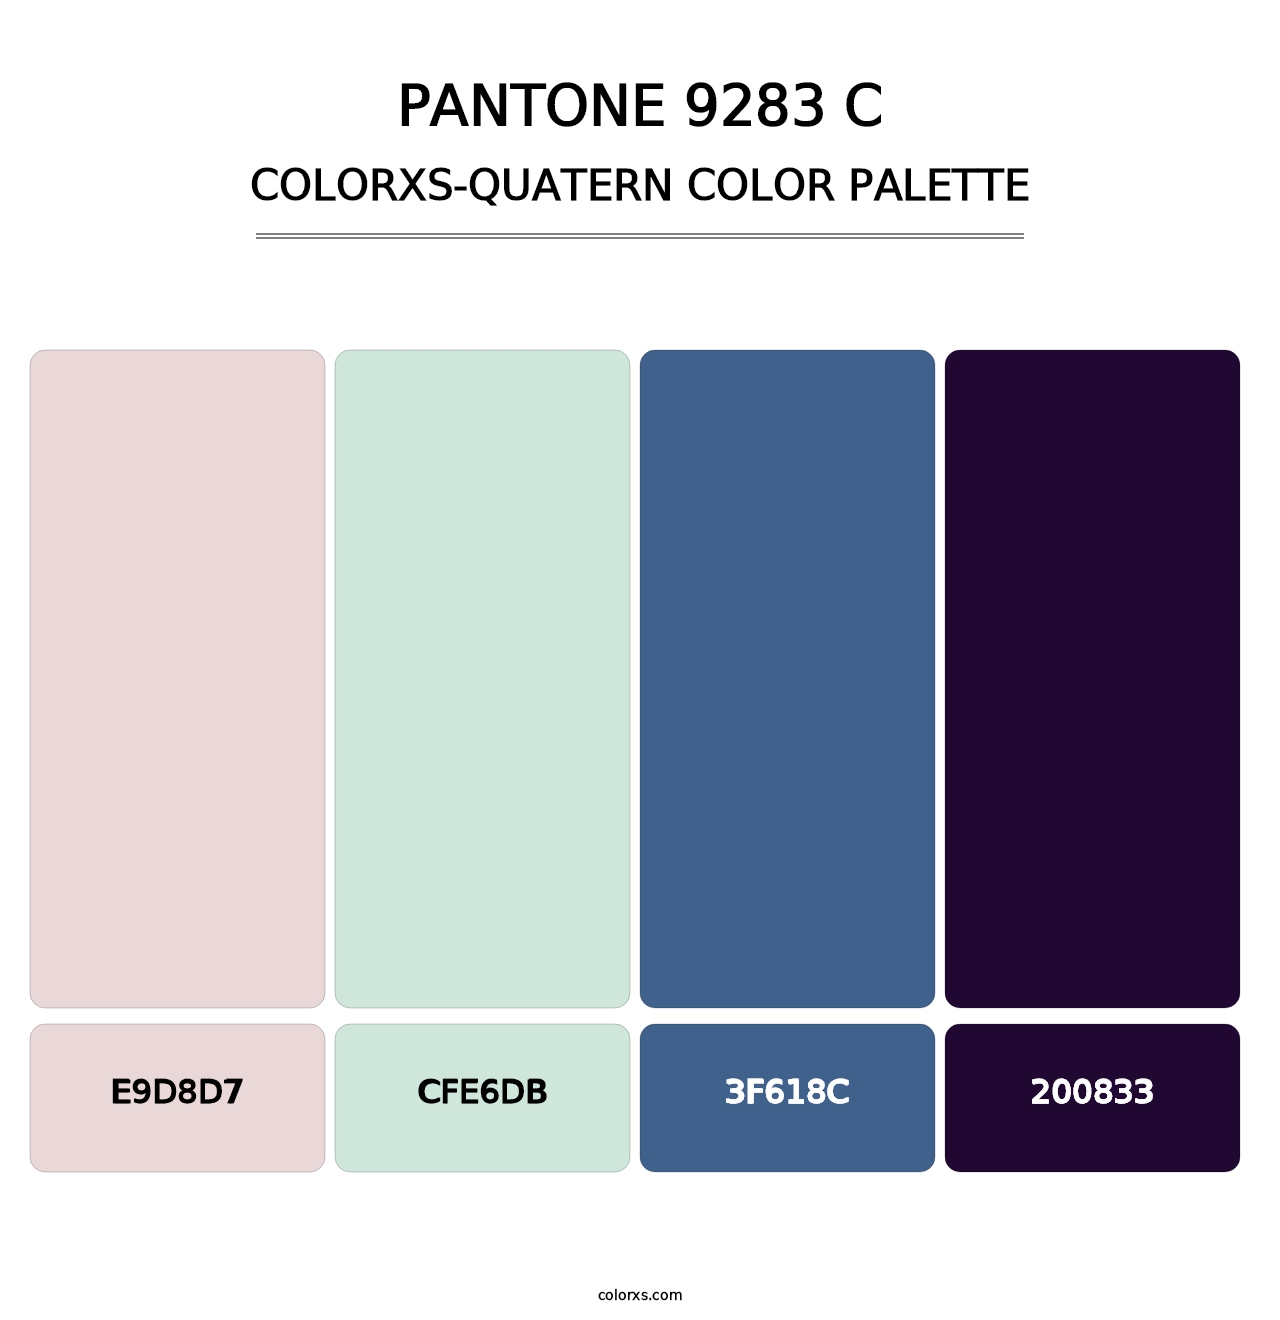 PANTONE 9283 C - Colorxs Quatern Palette